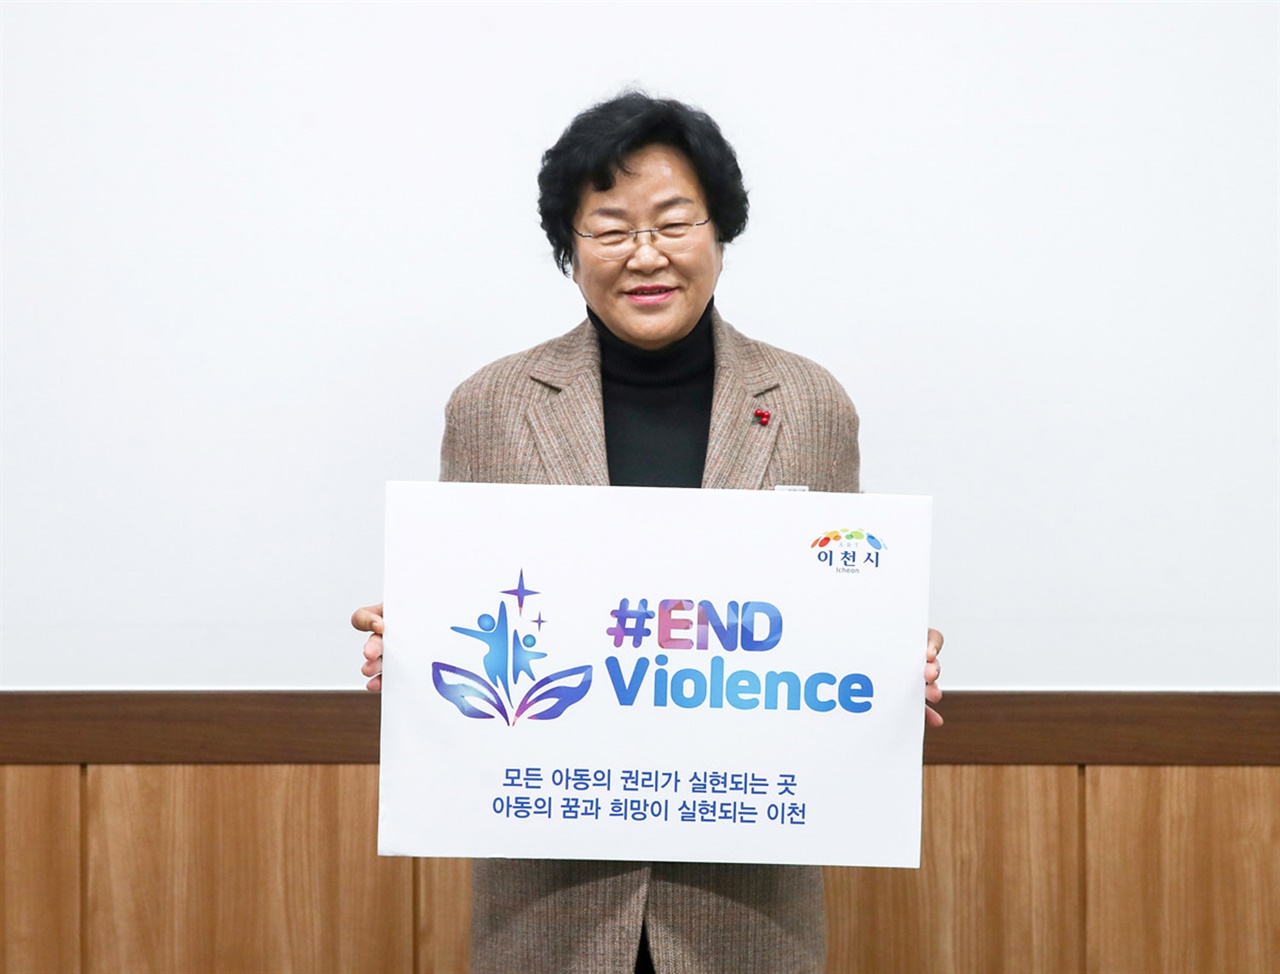 김경희 이천시장이 아동·청소년 대상 폭력근절을 위한 챌린지 캠페인(＃END Violence)에 나섰다.